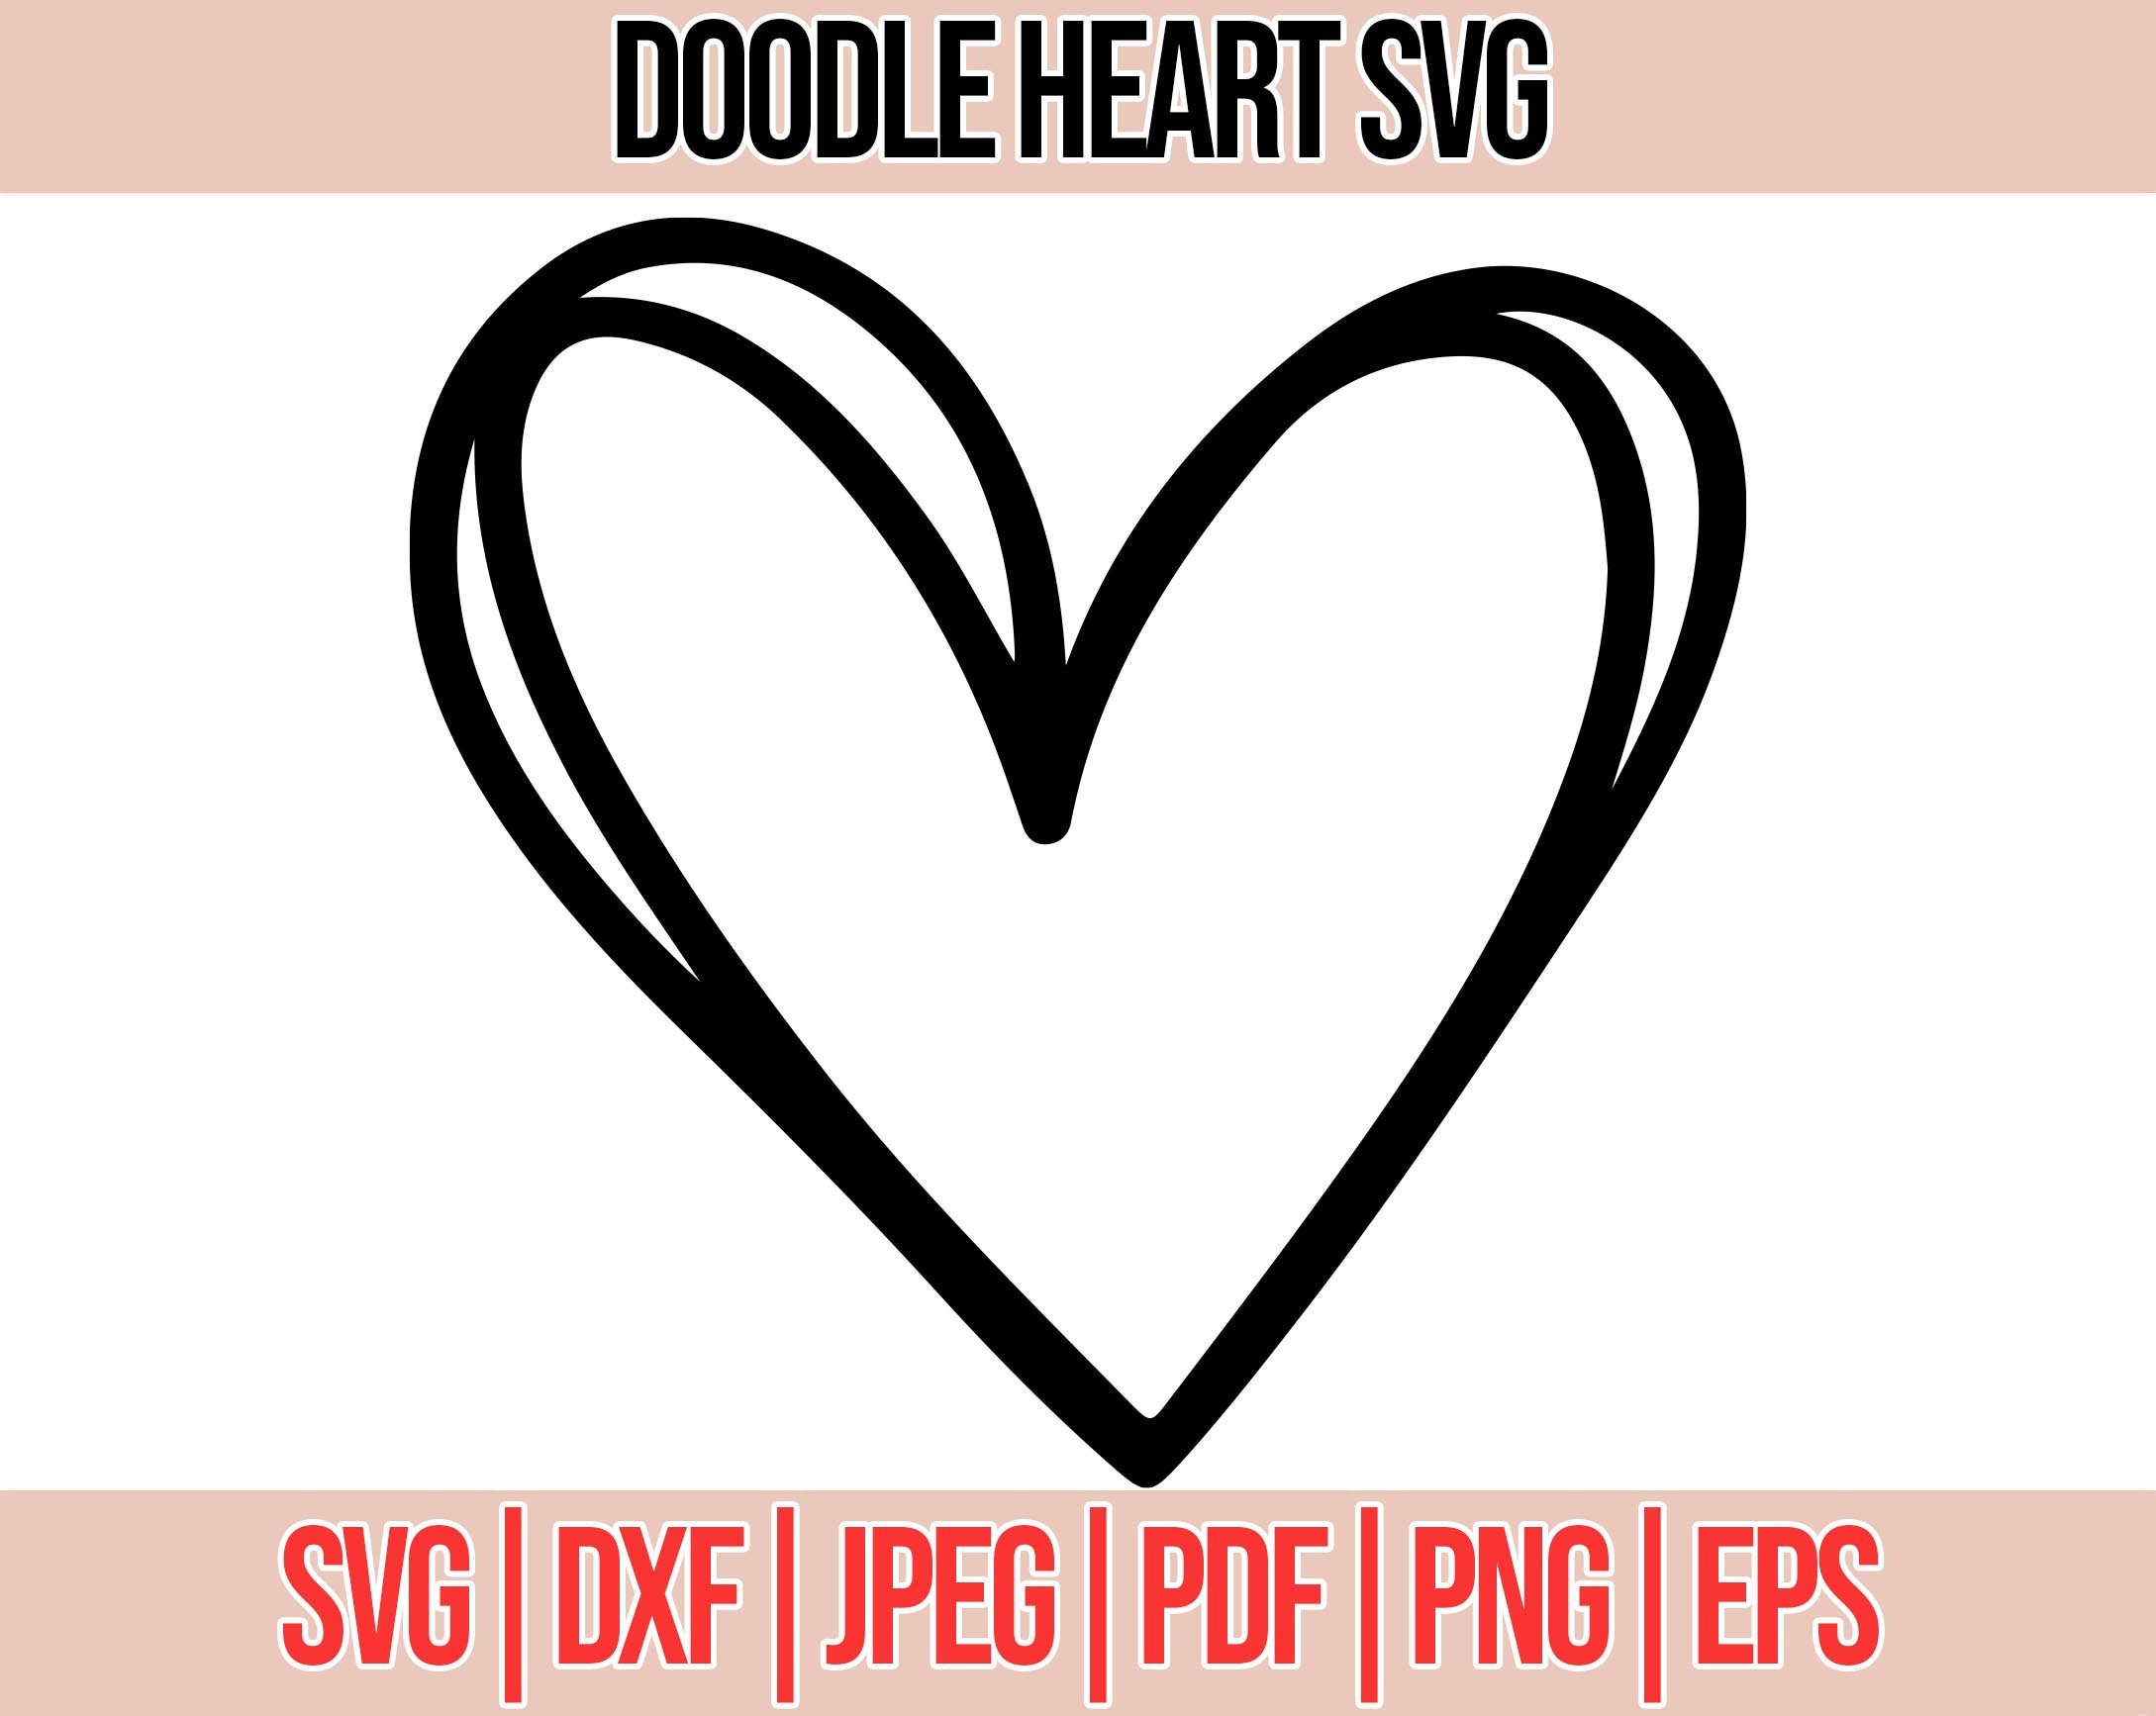 Easy Heart Chalkboard Labels + Free SVG Cut File - Sprinklesofzeal